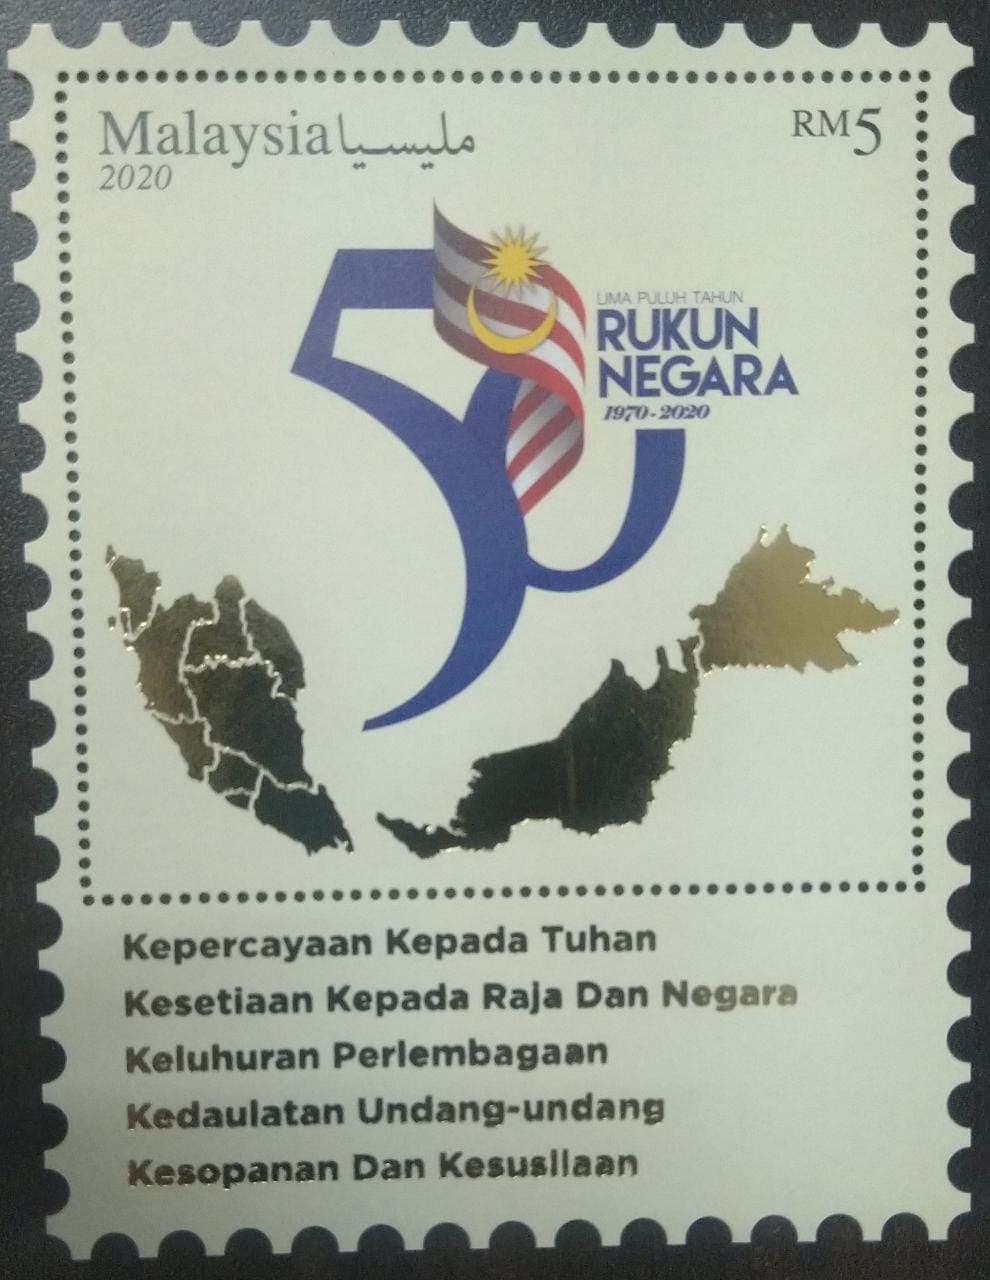 Malaysia 2020 – 50th Anniversary of Rukun Negara